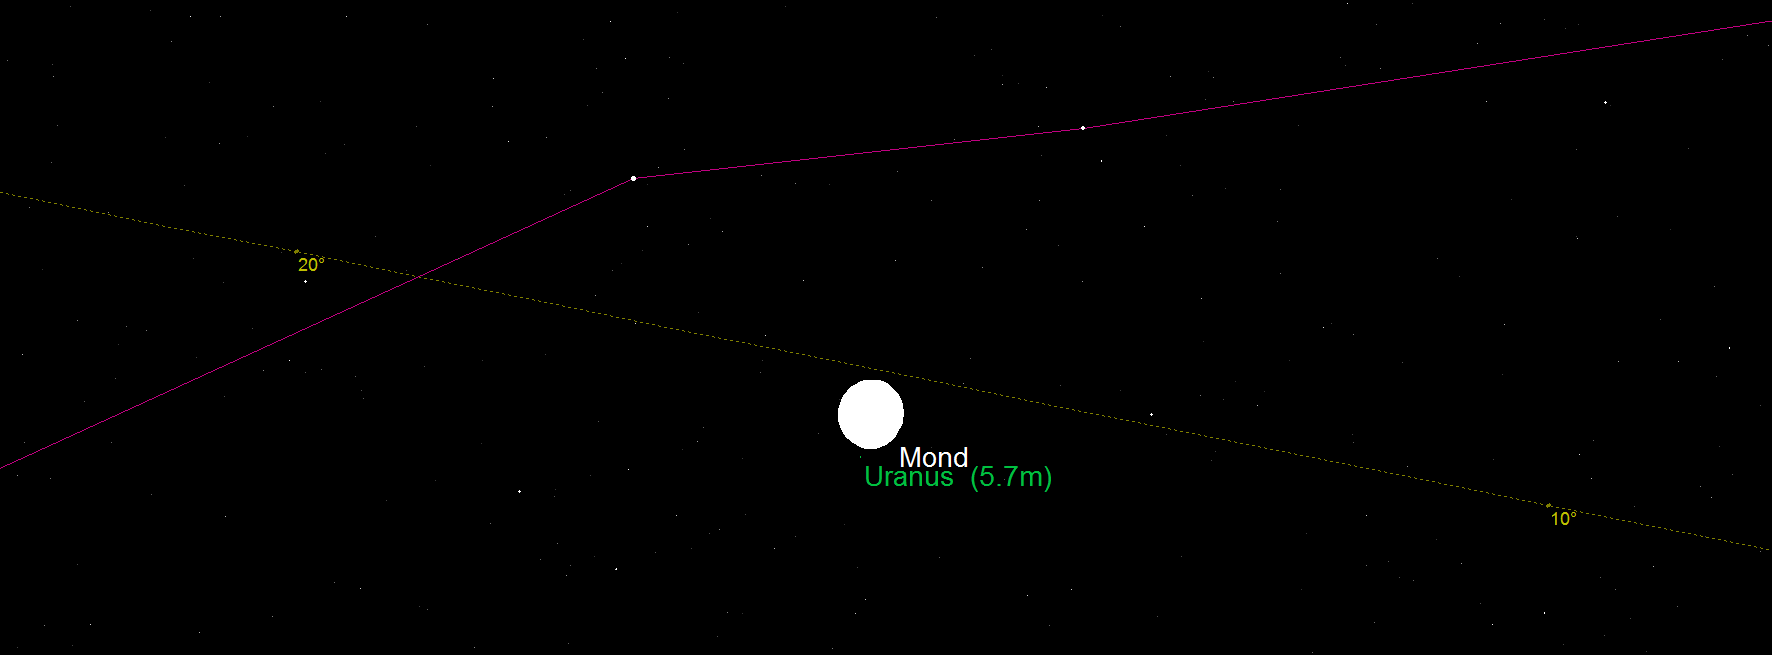 Mond und Uranus am 11. September 2014